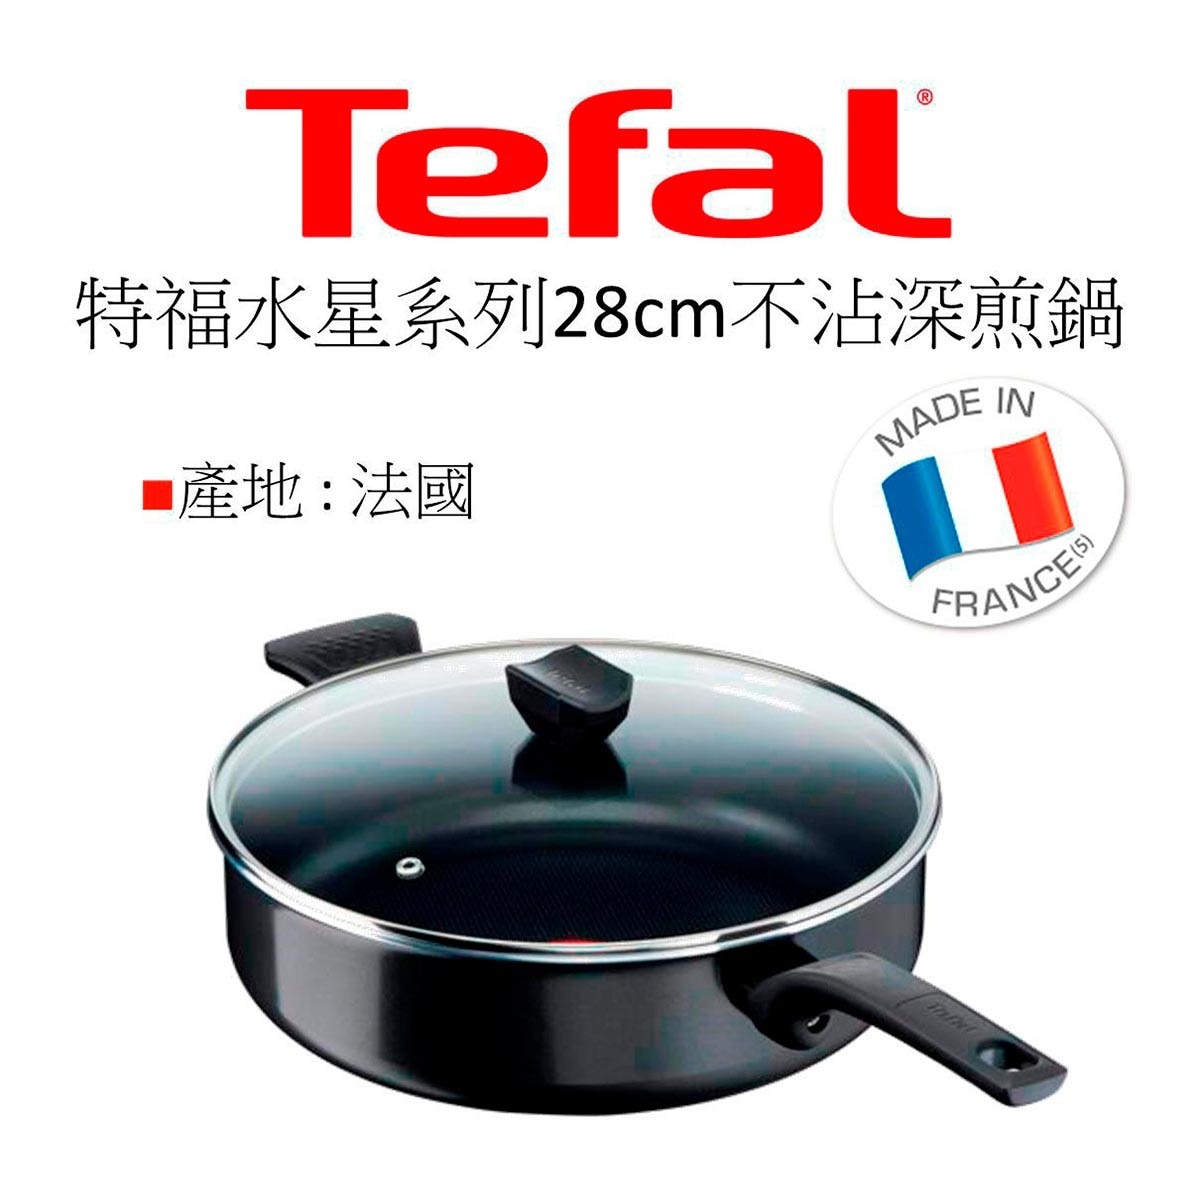 Tefal 法國特福水星系列28CM不沾深煎鍋，耐用不沾塗層，少油健康烹煮，放射傳導鍋底，均勻導熱，獨家佳溫紅心，掌握最佳烹調溫度。